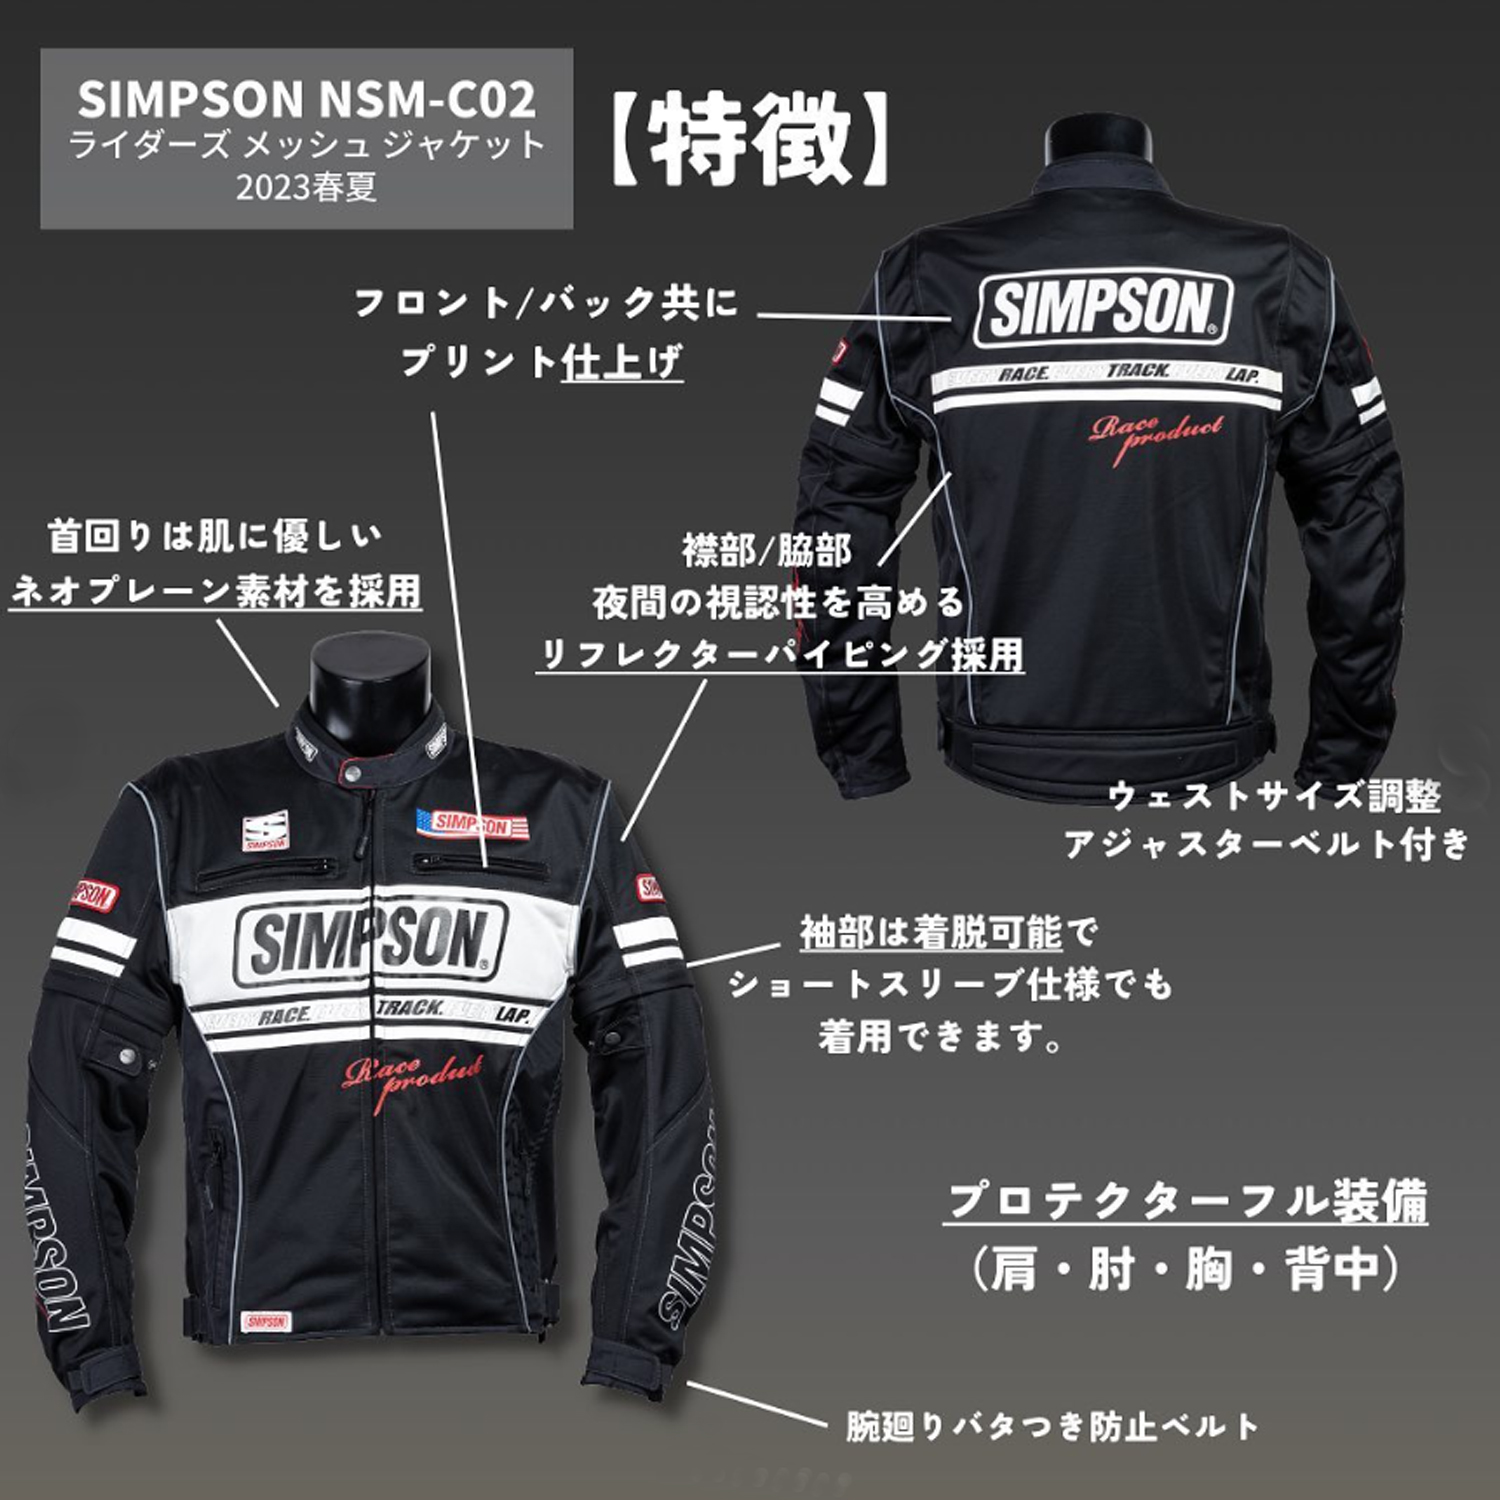 セール品 シンプソンジャケット 春夏モデル NSM-C02 Simpson 2023SS 2W 